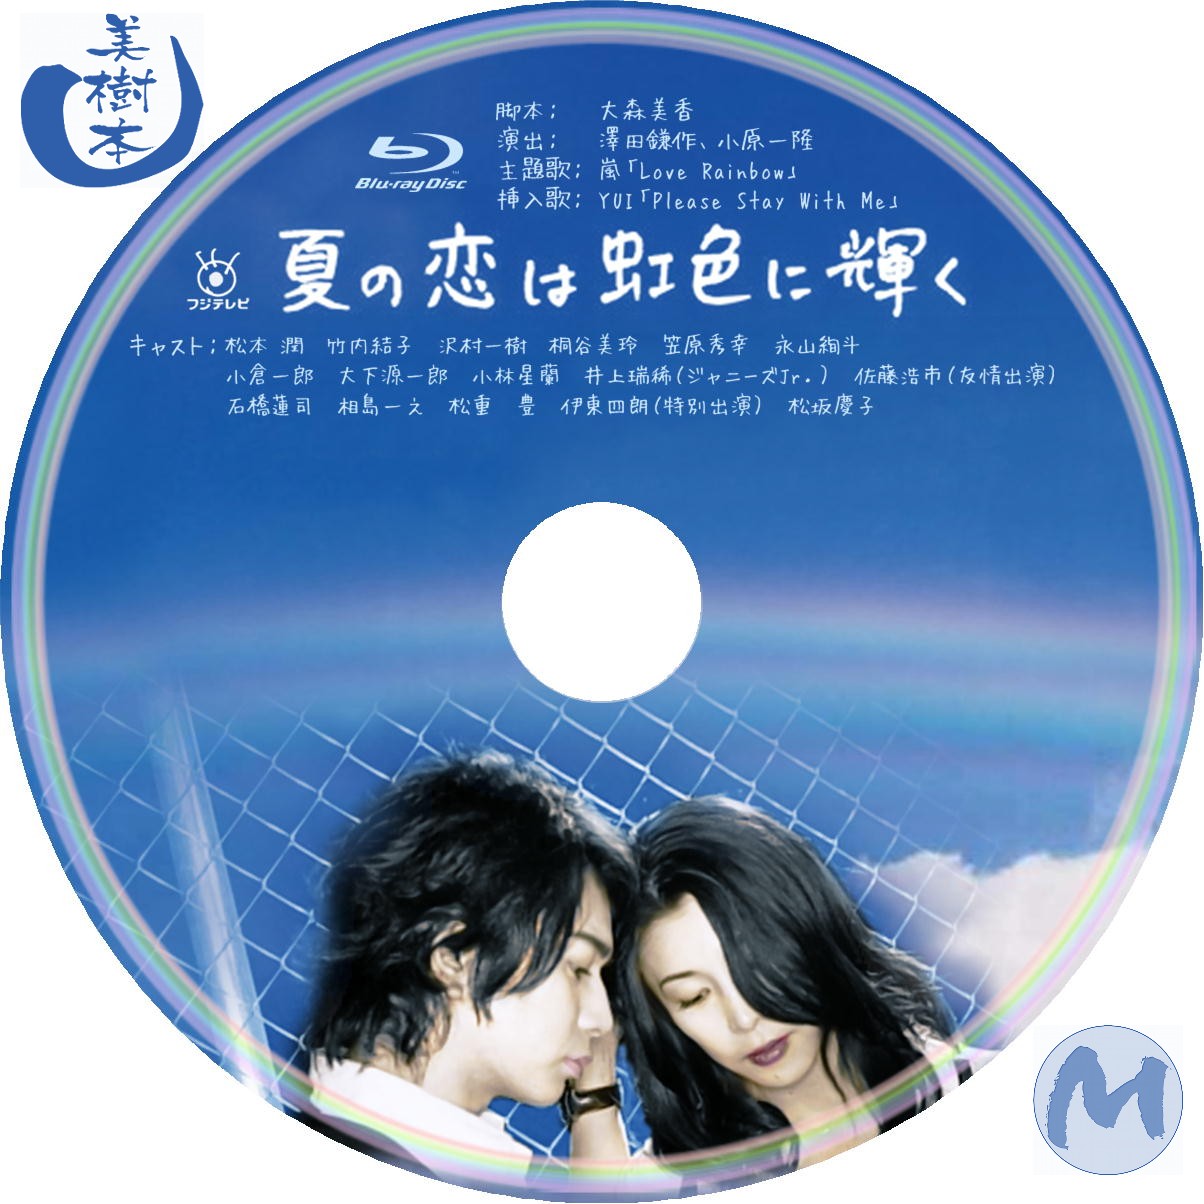 毎日新作アイテム入荷中 夏の恋は虹色に輝く DVD-BOX その他 - daisenkaku.or.jp